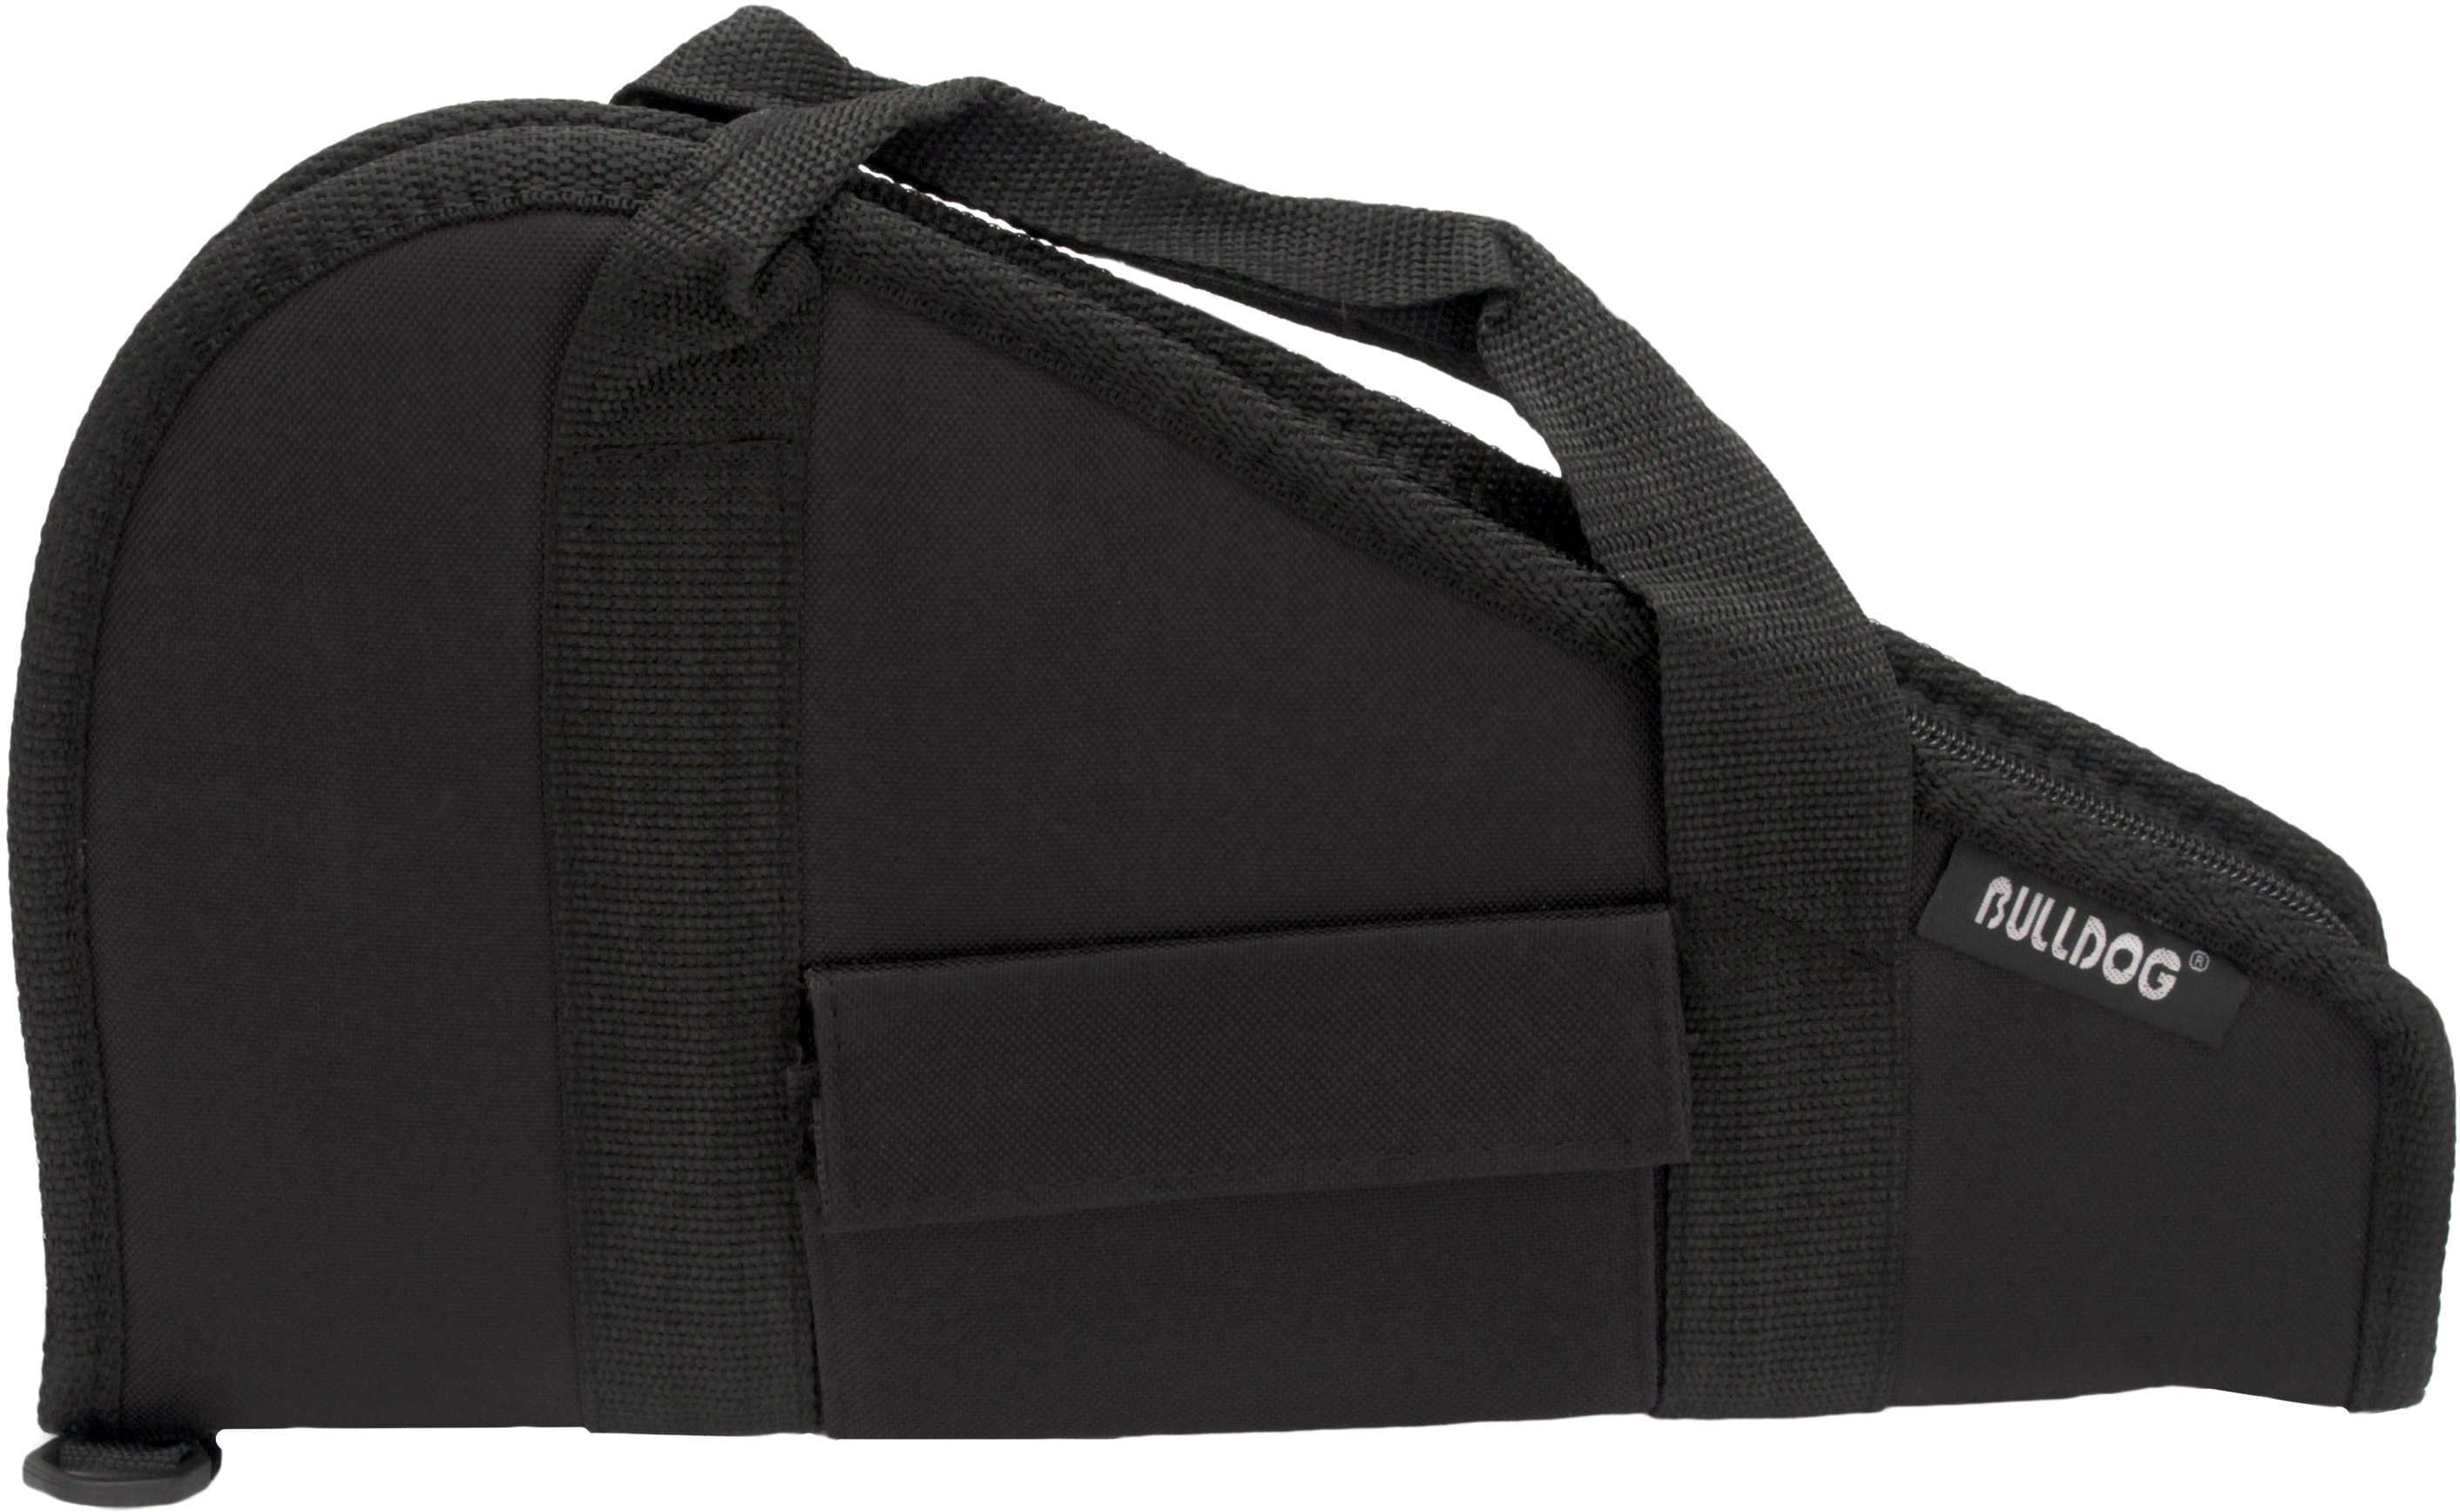 Bulldog Cases Pistol Rug Black, Medium w/ Accessory Pocket BD601